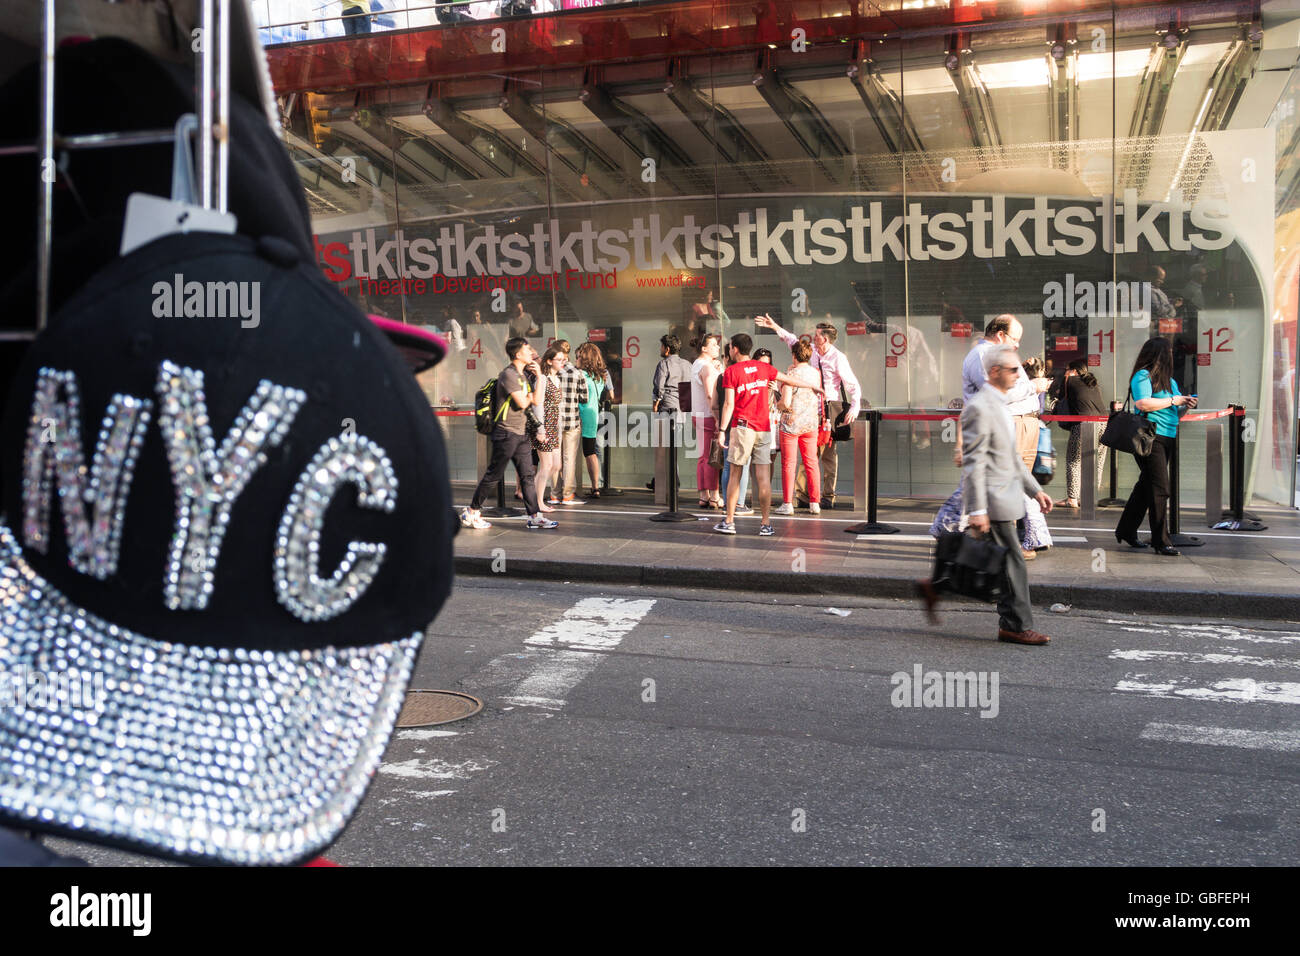 Cappellino NYC di fronte ai biglietti Tkts Discount Broadway, Duffy Square in Times Square, NYC, USA Foto Stock